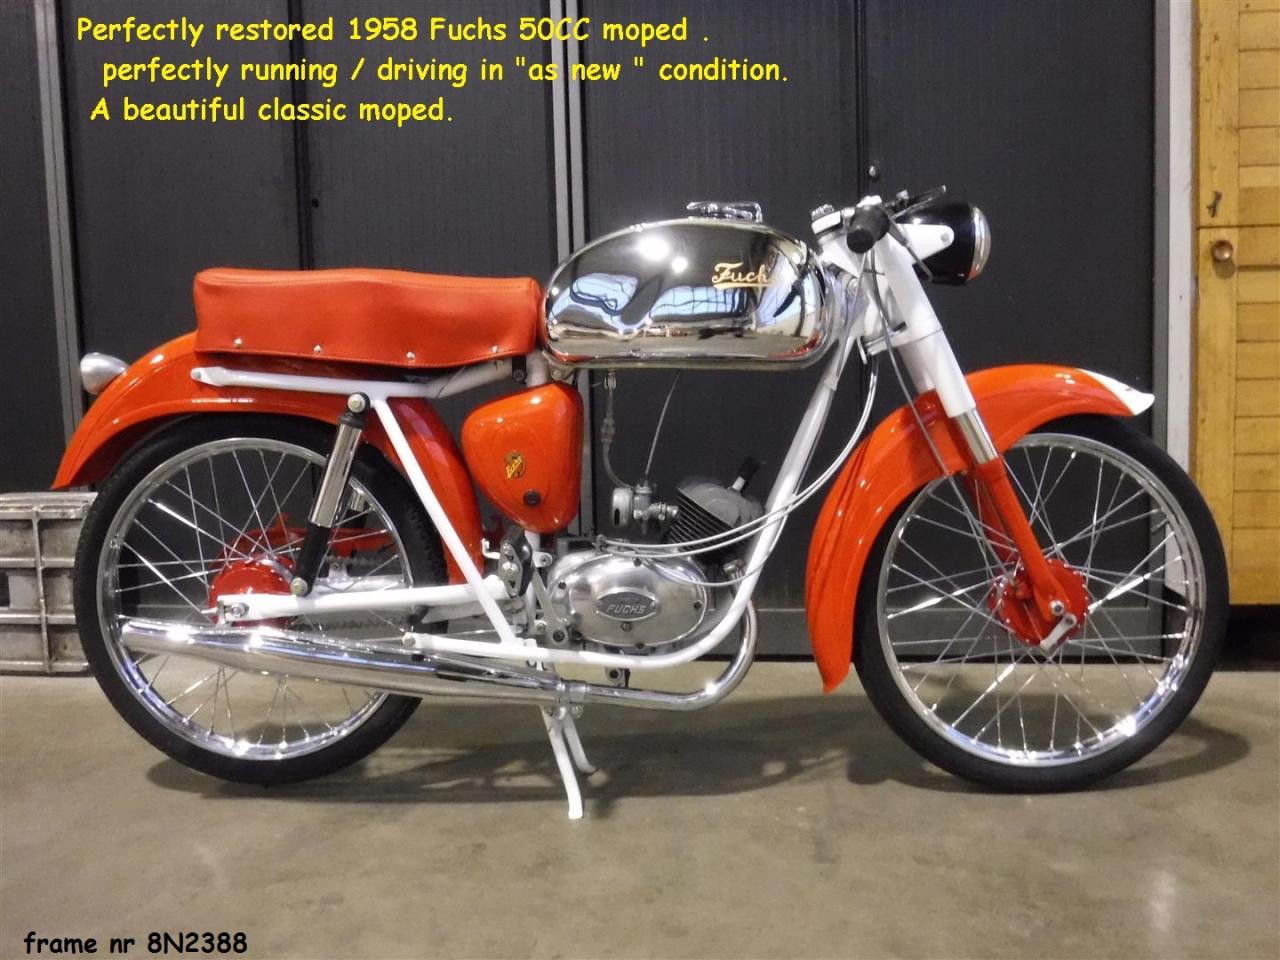 1958 Fuchs frame nr 8N2388